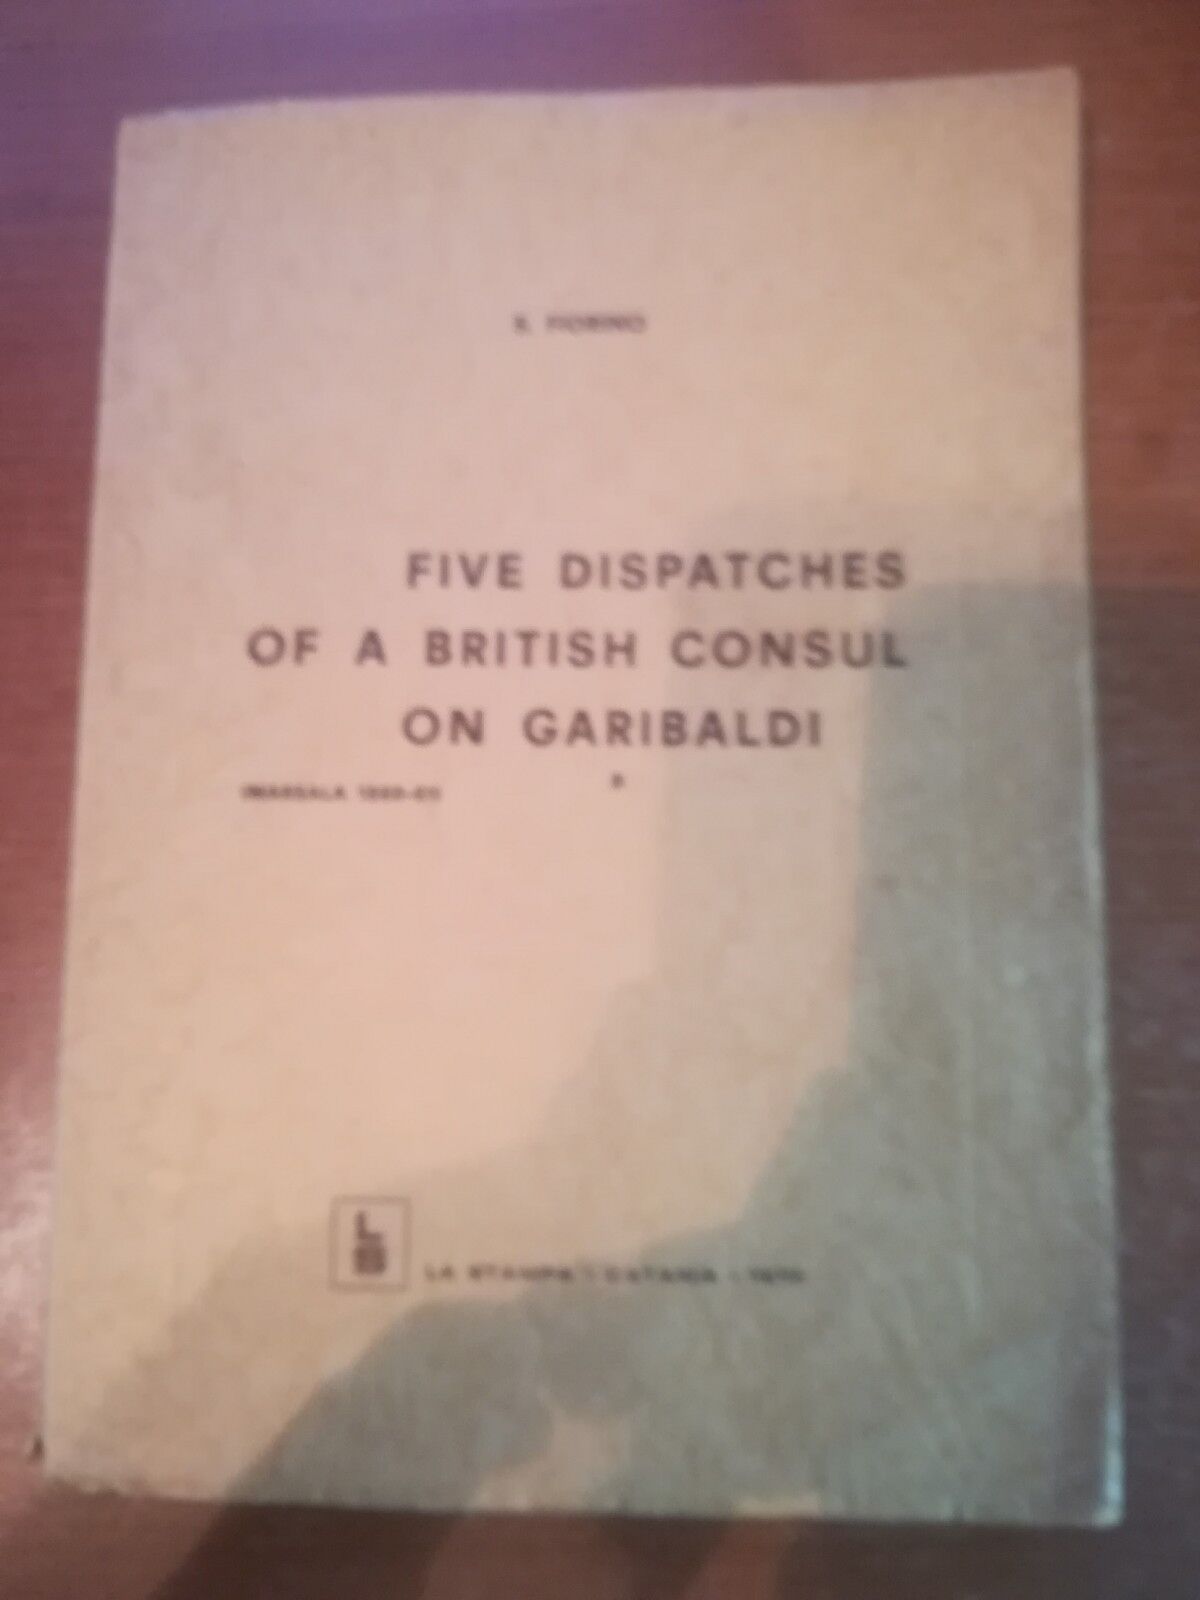 Five Dispatches of a british consul on Garibaldi - S. Fiorino - La stampa-1970-M